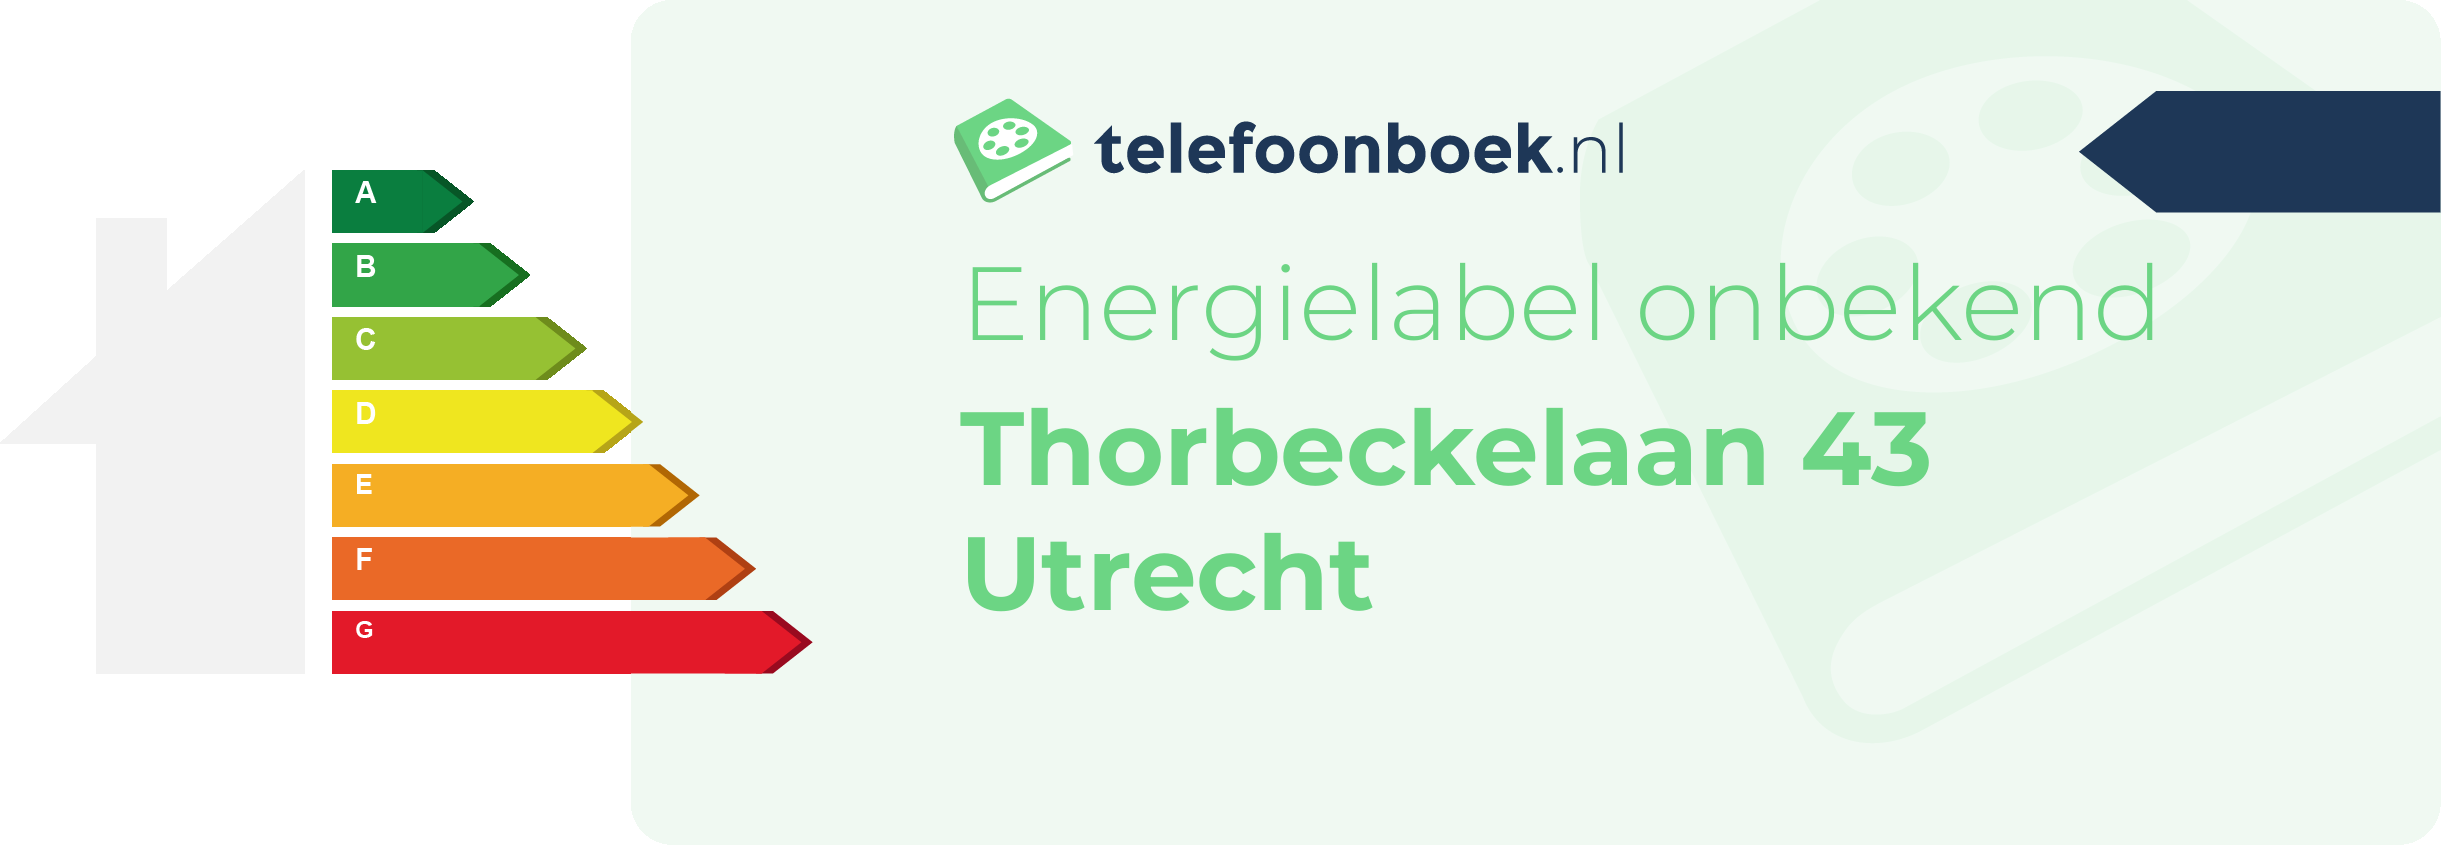 Energielabel Thorbeckelaan 43 Utrecht